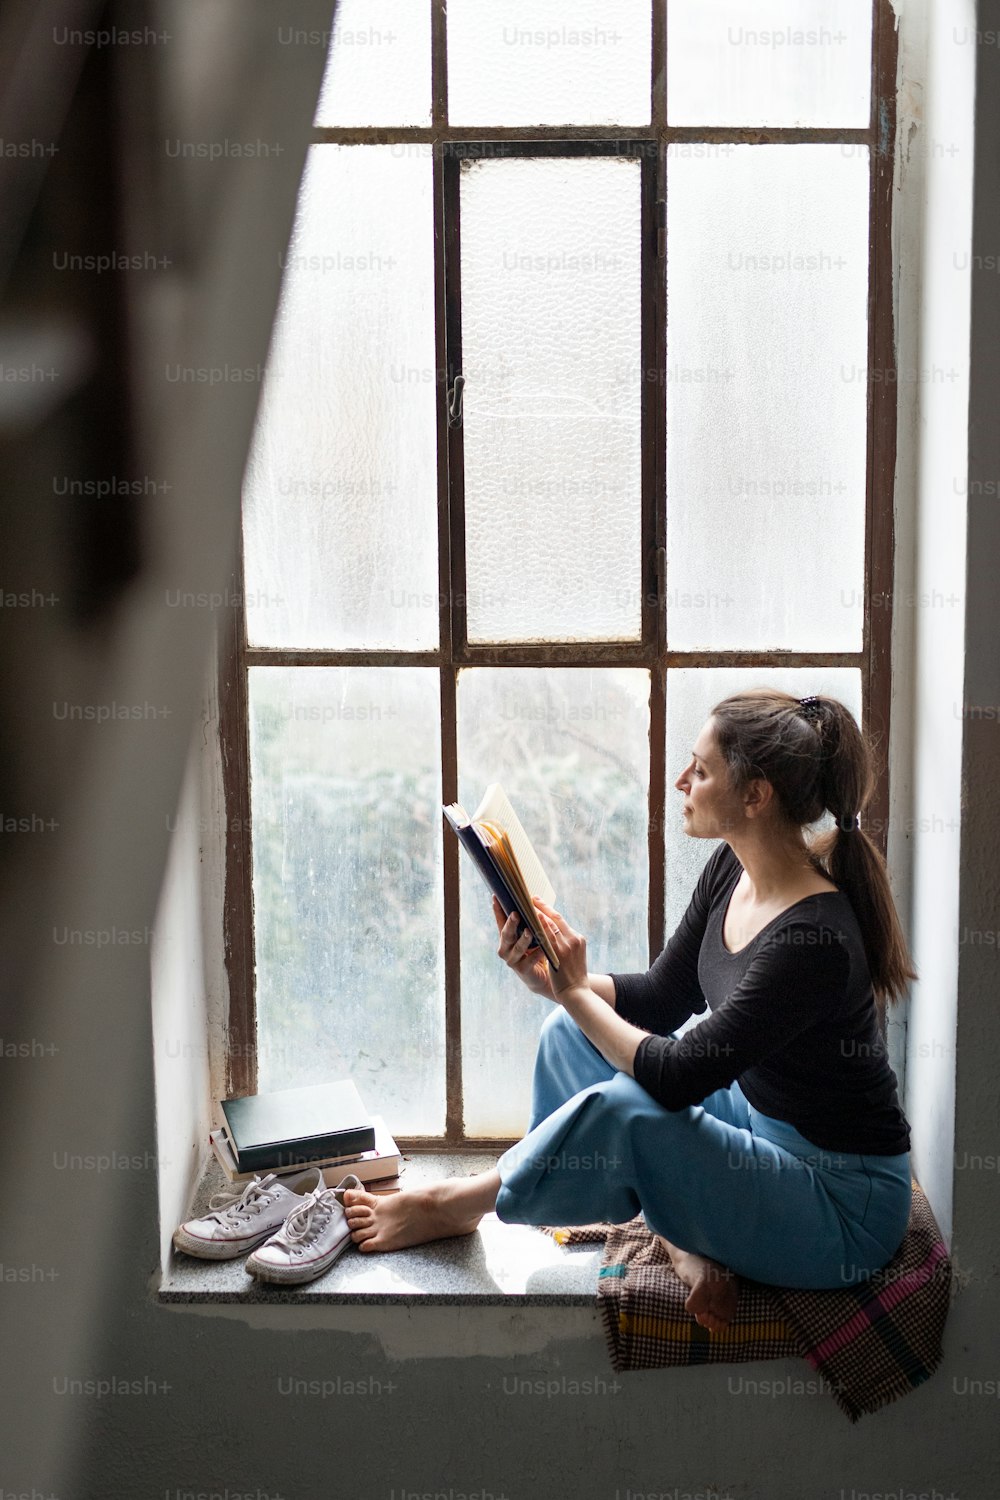 Porträt einer glücklichen Frau, die auf einer alten und schmutzigen Fensterbank sitzt und ein Buch liest.